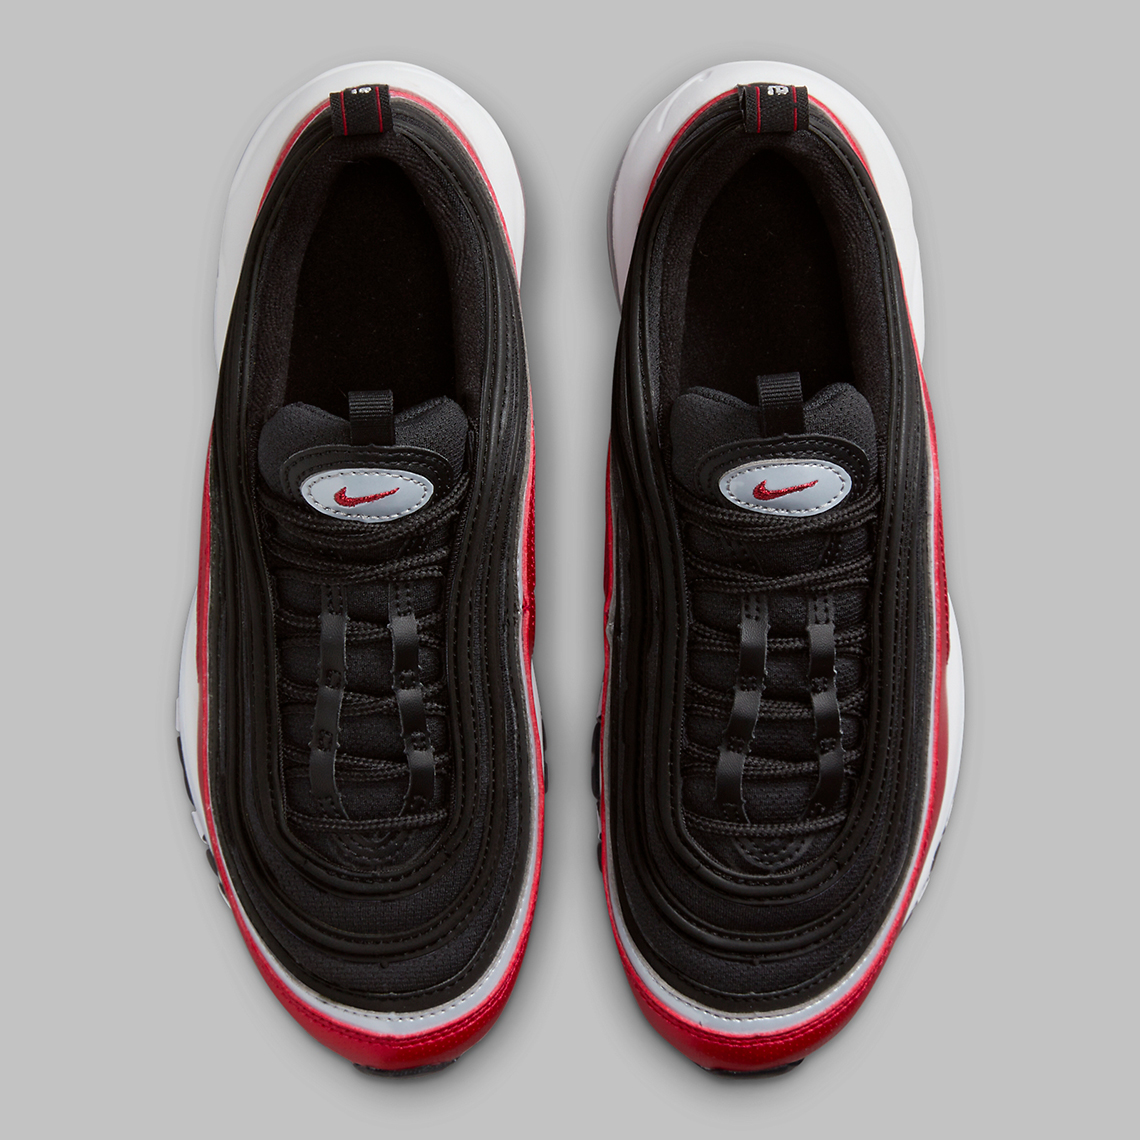 Nike Air Max 97 Gs Red Black Grey Fb3245 001 2